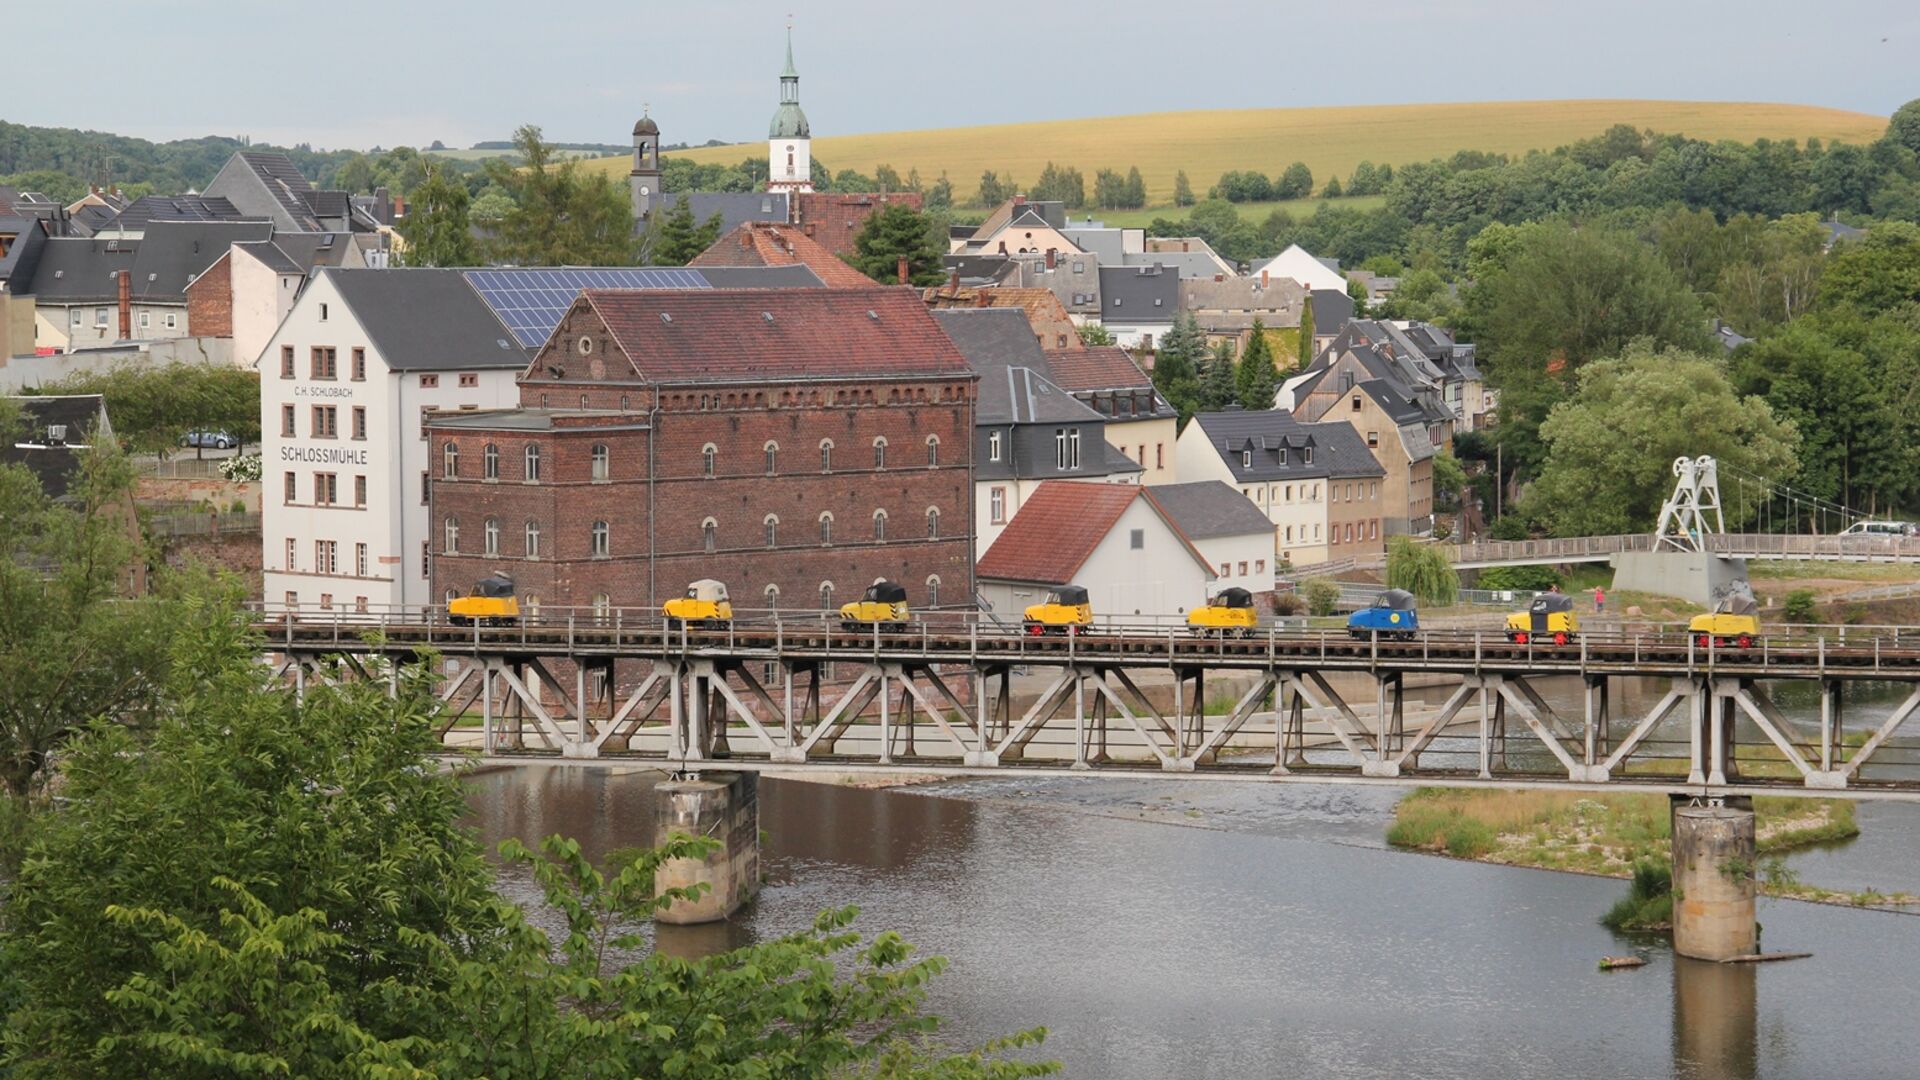 Schienentrabis in Rochlitz auf Muldenbrücke 
© Thomas Strömsdörfer